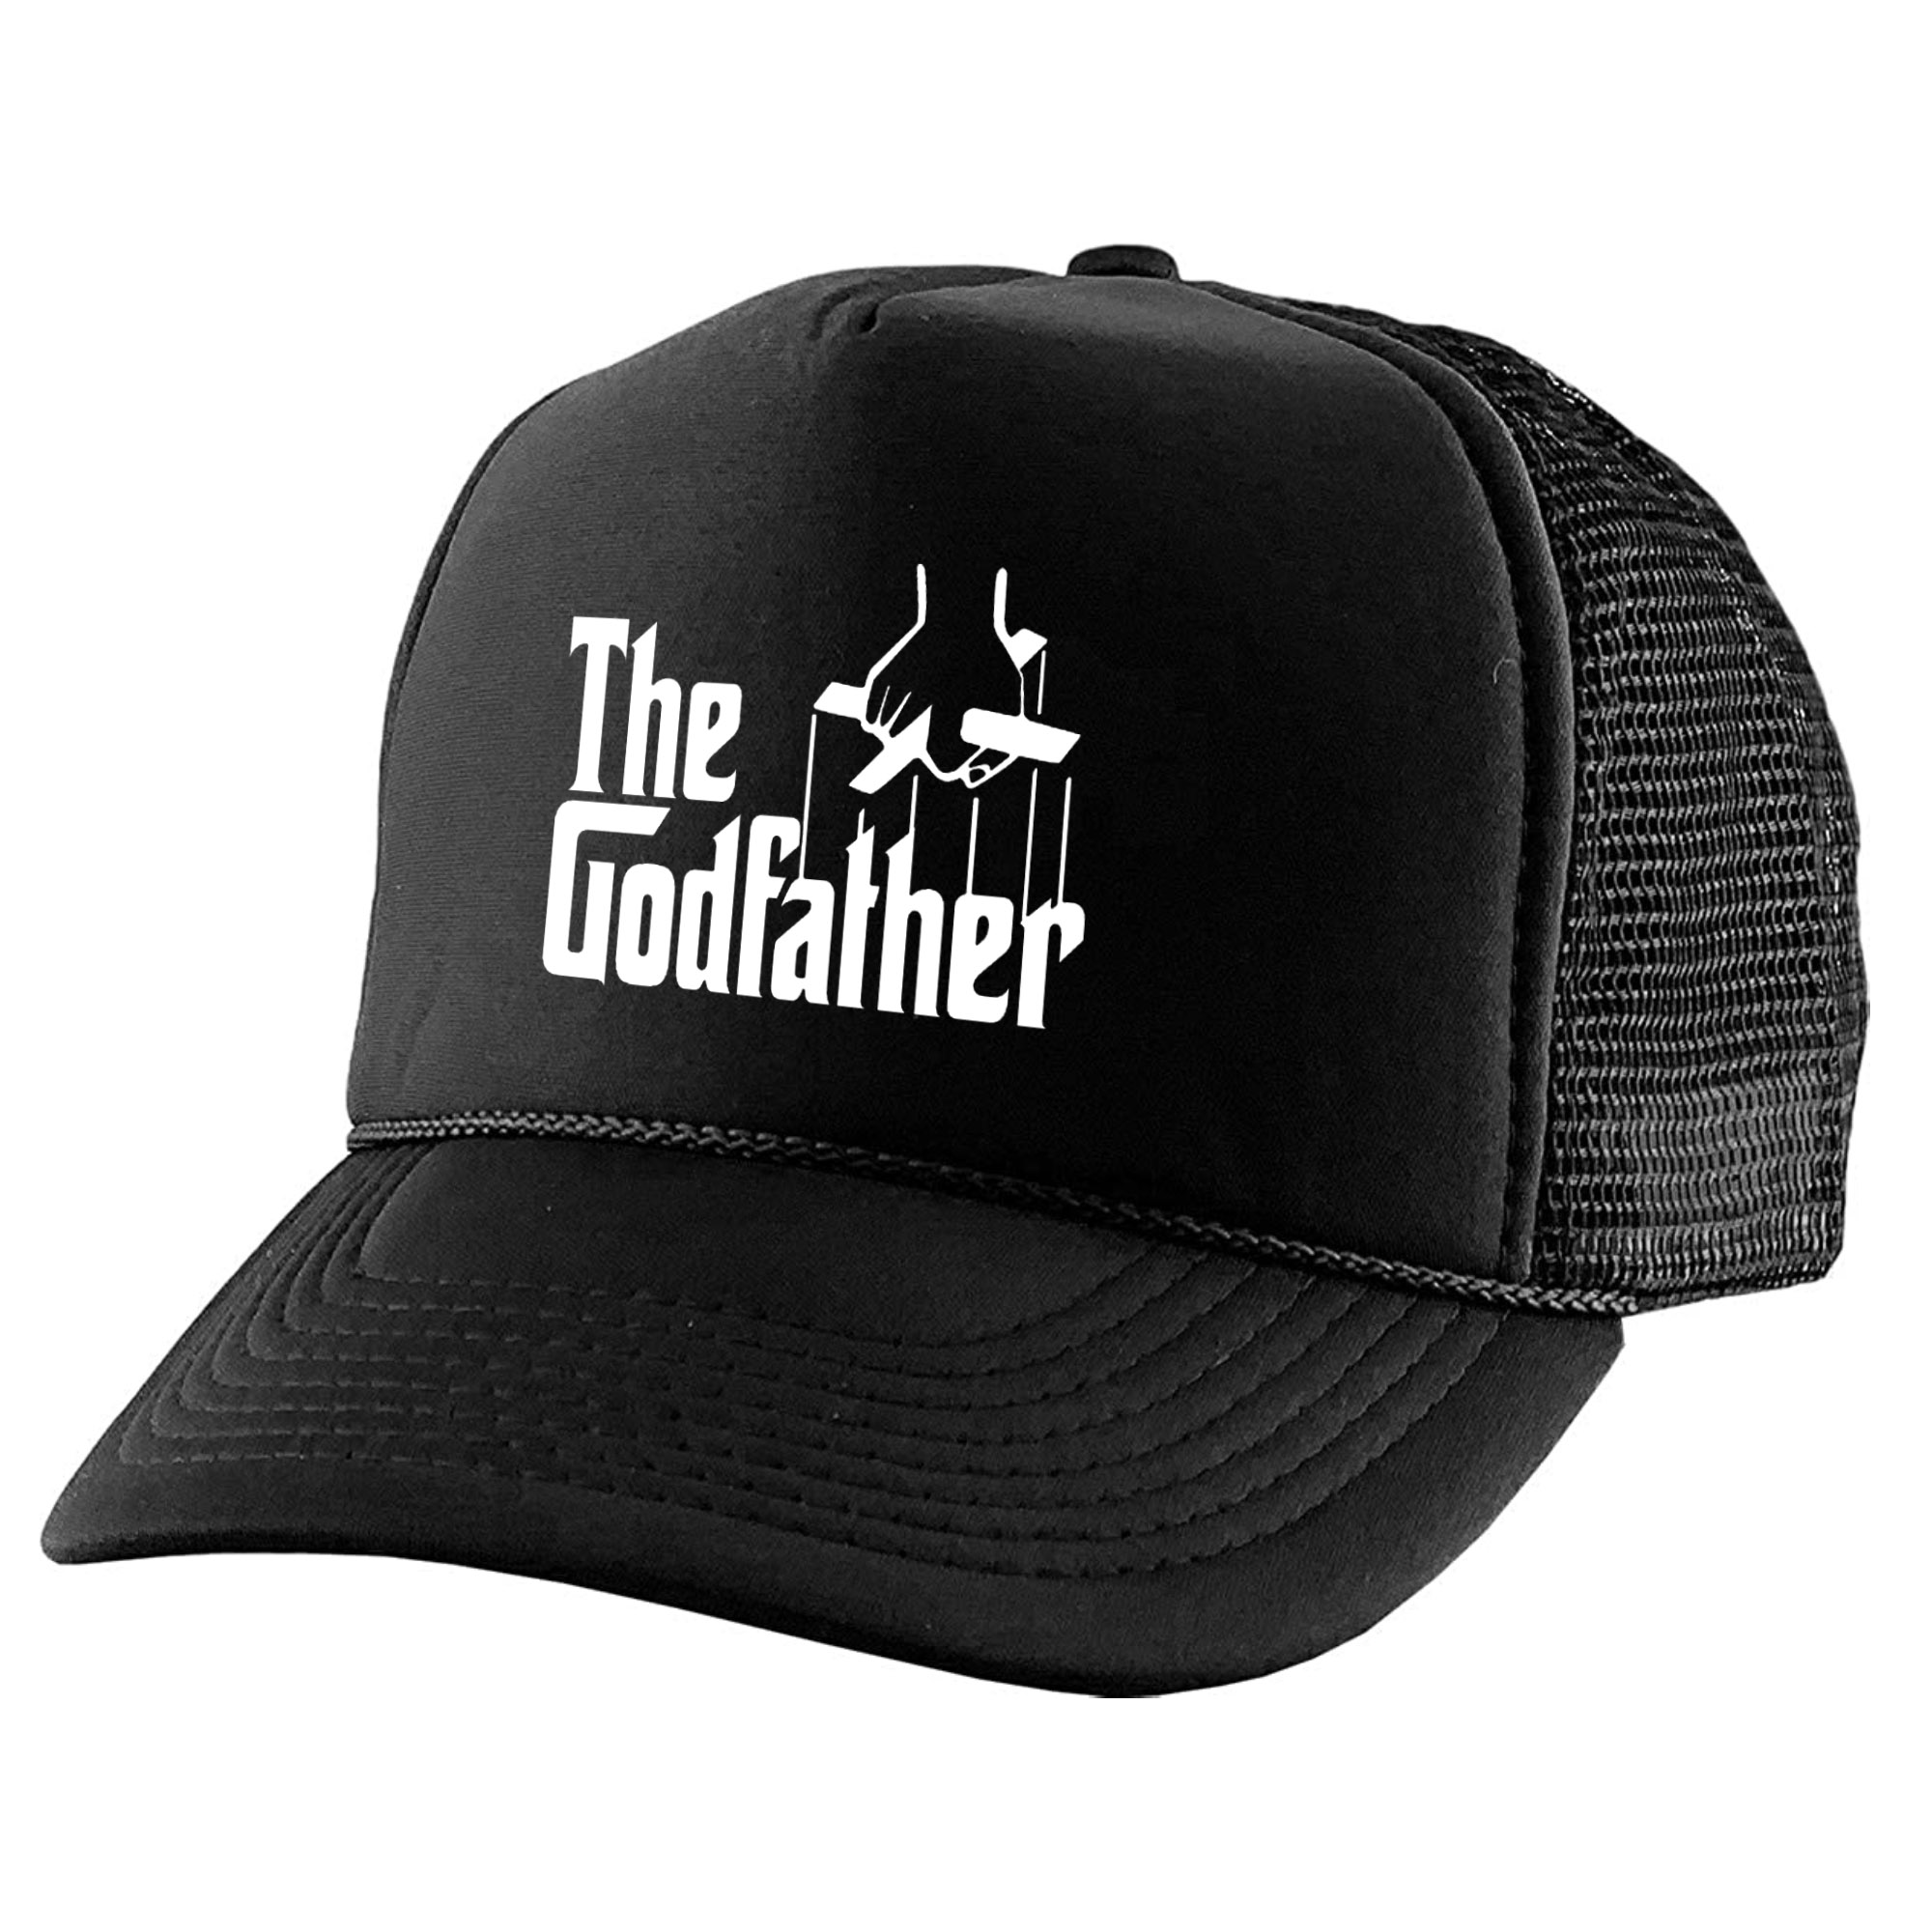 نکته خرید - قیمت روز کلاه کپ مدل THE GOD FATHER کد KPP-03 خرید